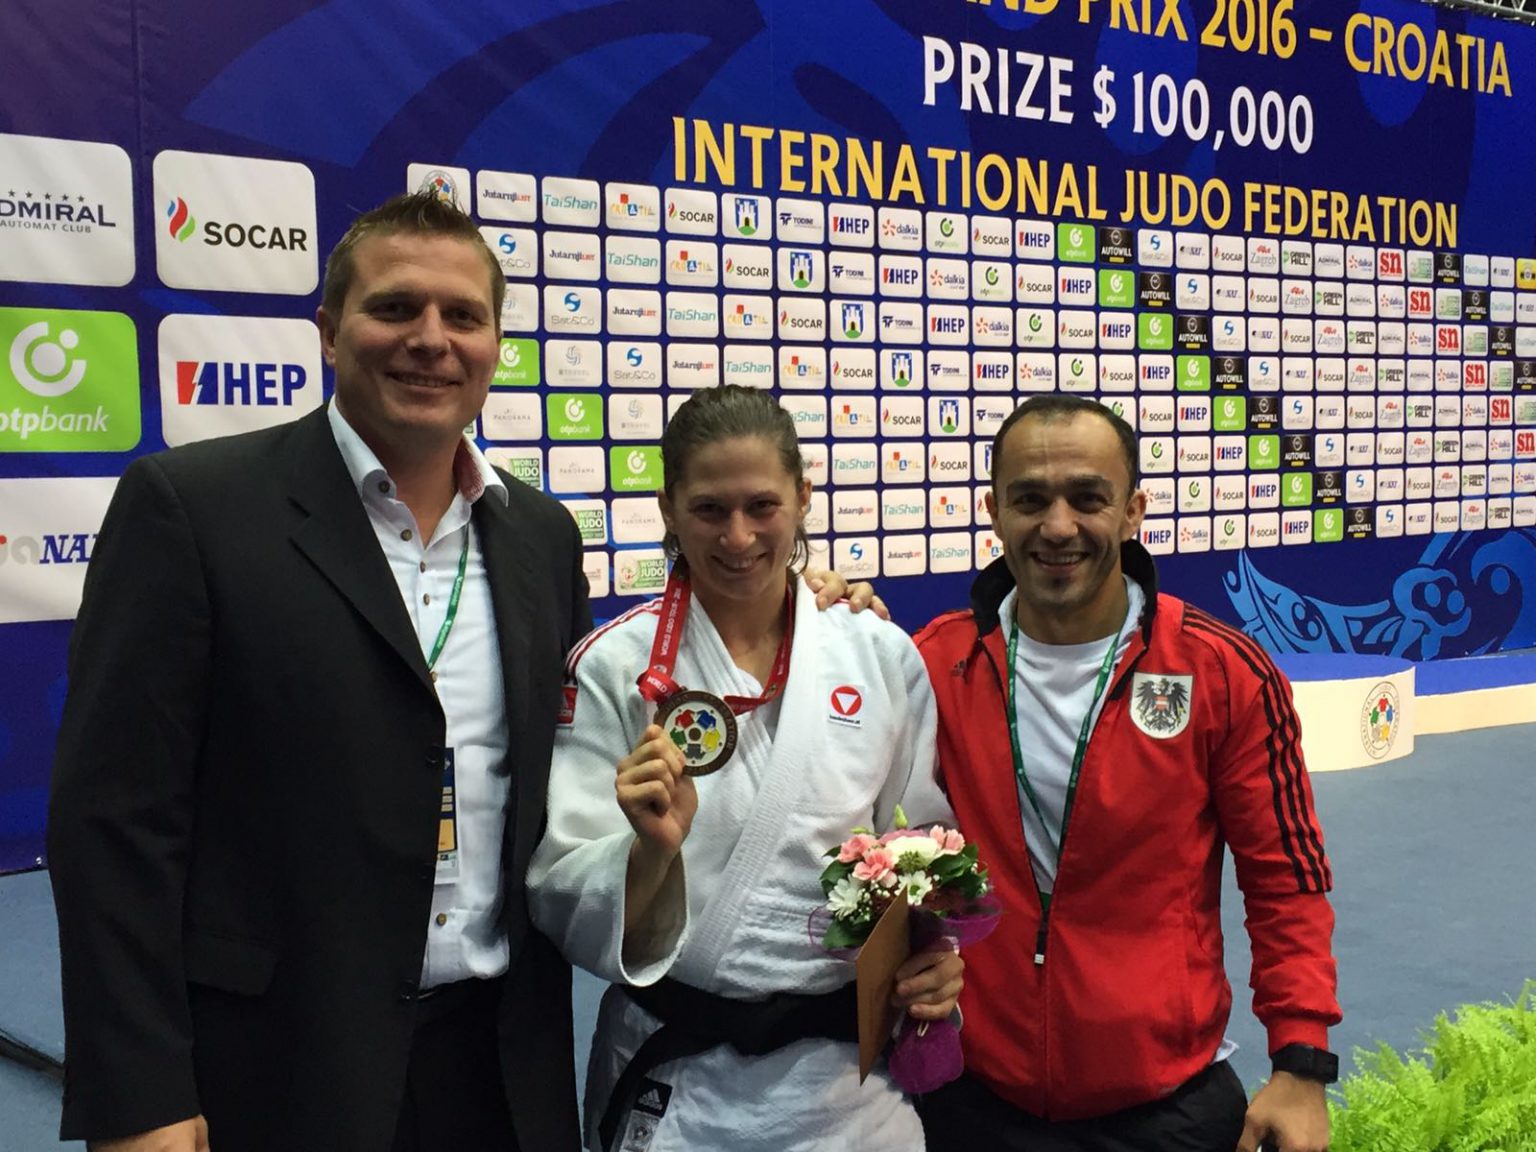 Magda Krssakova mit Podestpremiere auf Judo World Tour